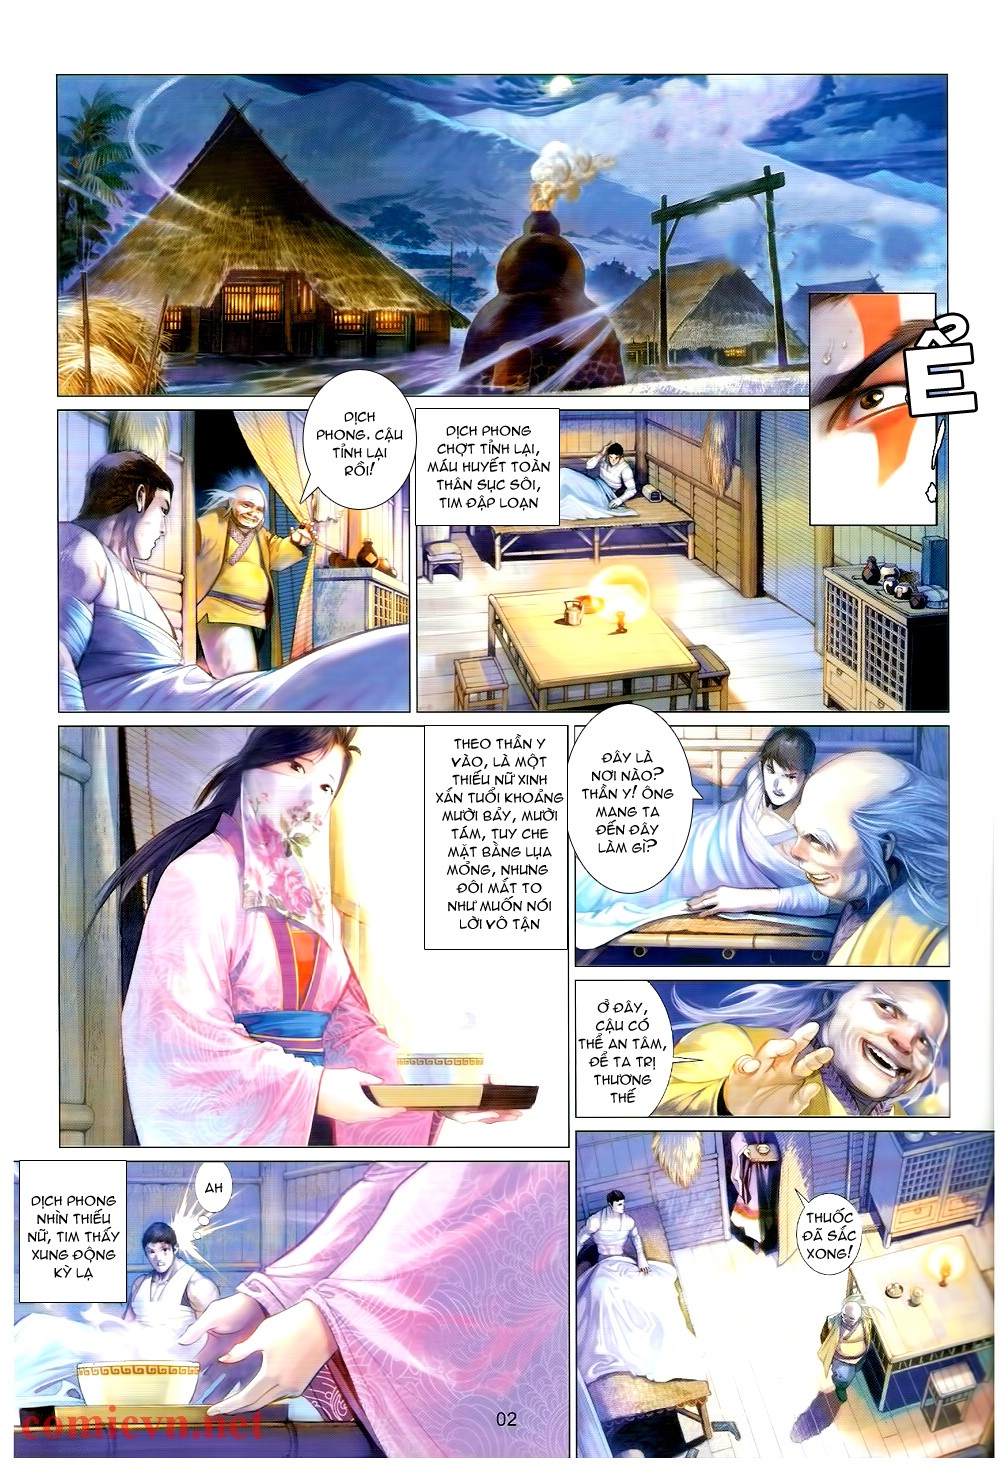 Phong Vân chap 576 trang 2